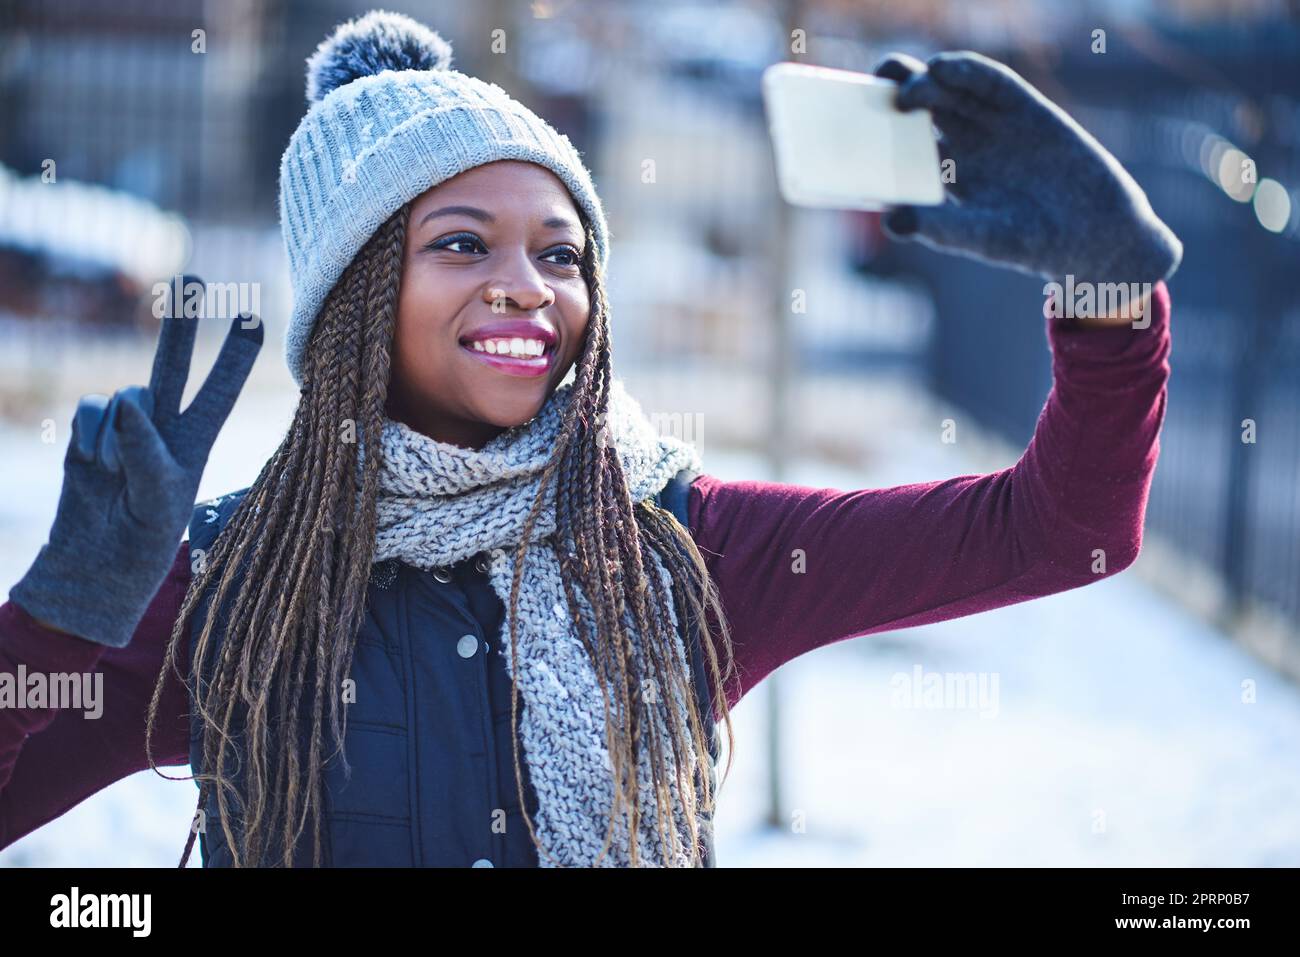 Non è il giorno della neve fino a quando non si prende un selfie. una bella giovane donna che prende un selfie in una giornata innevata all'aperto Foto Stock